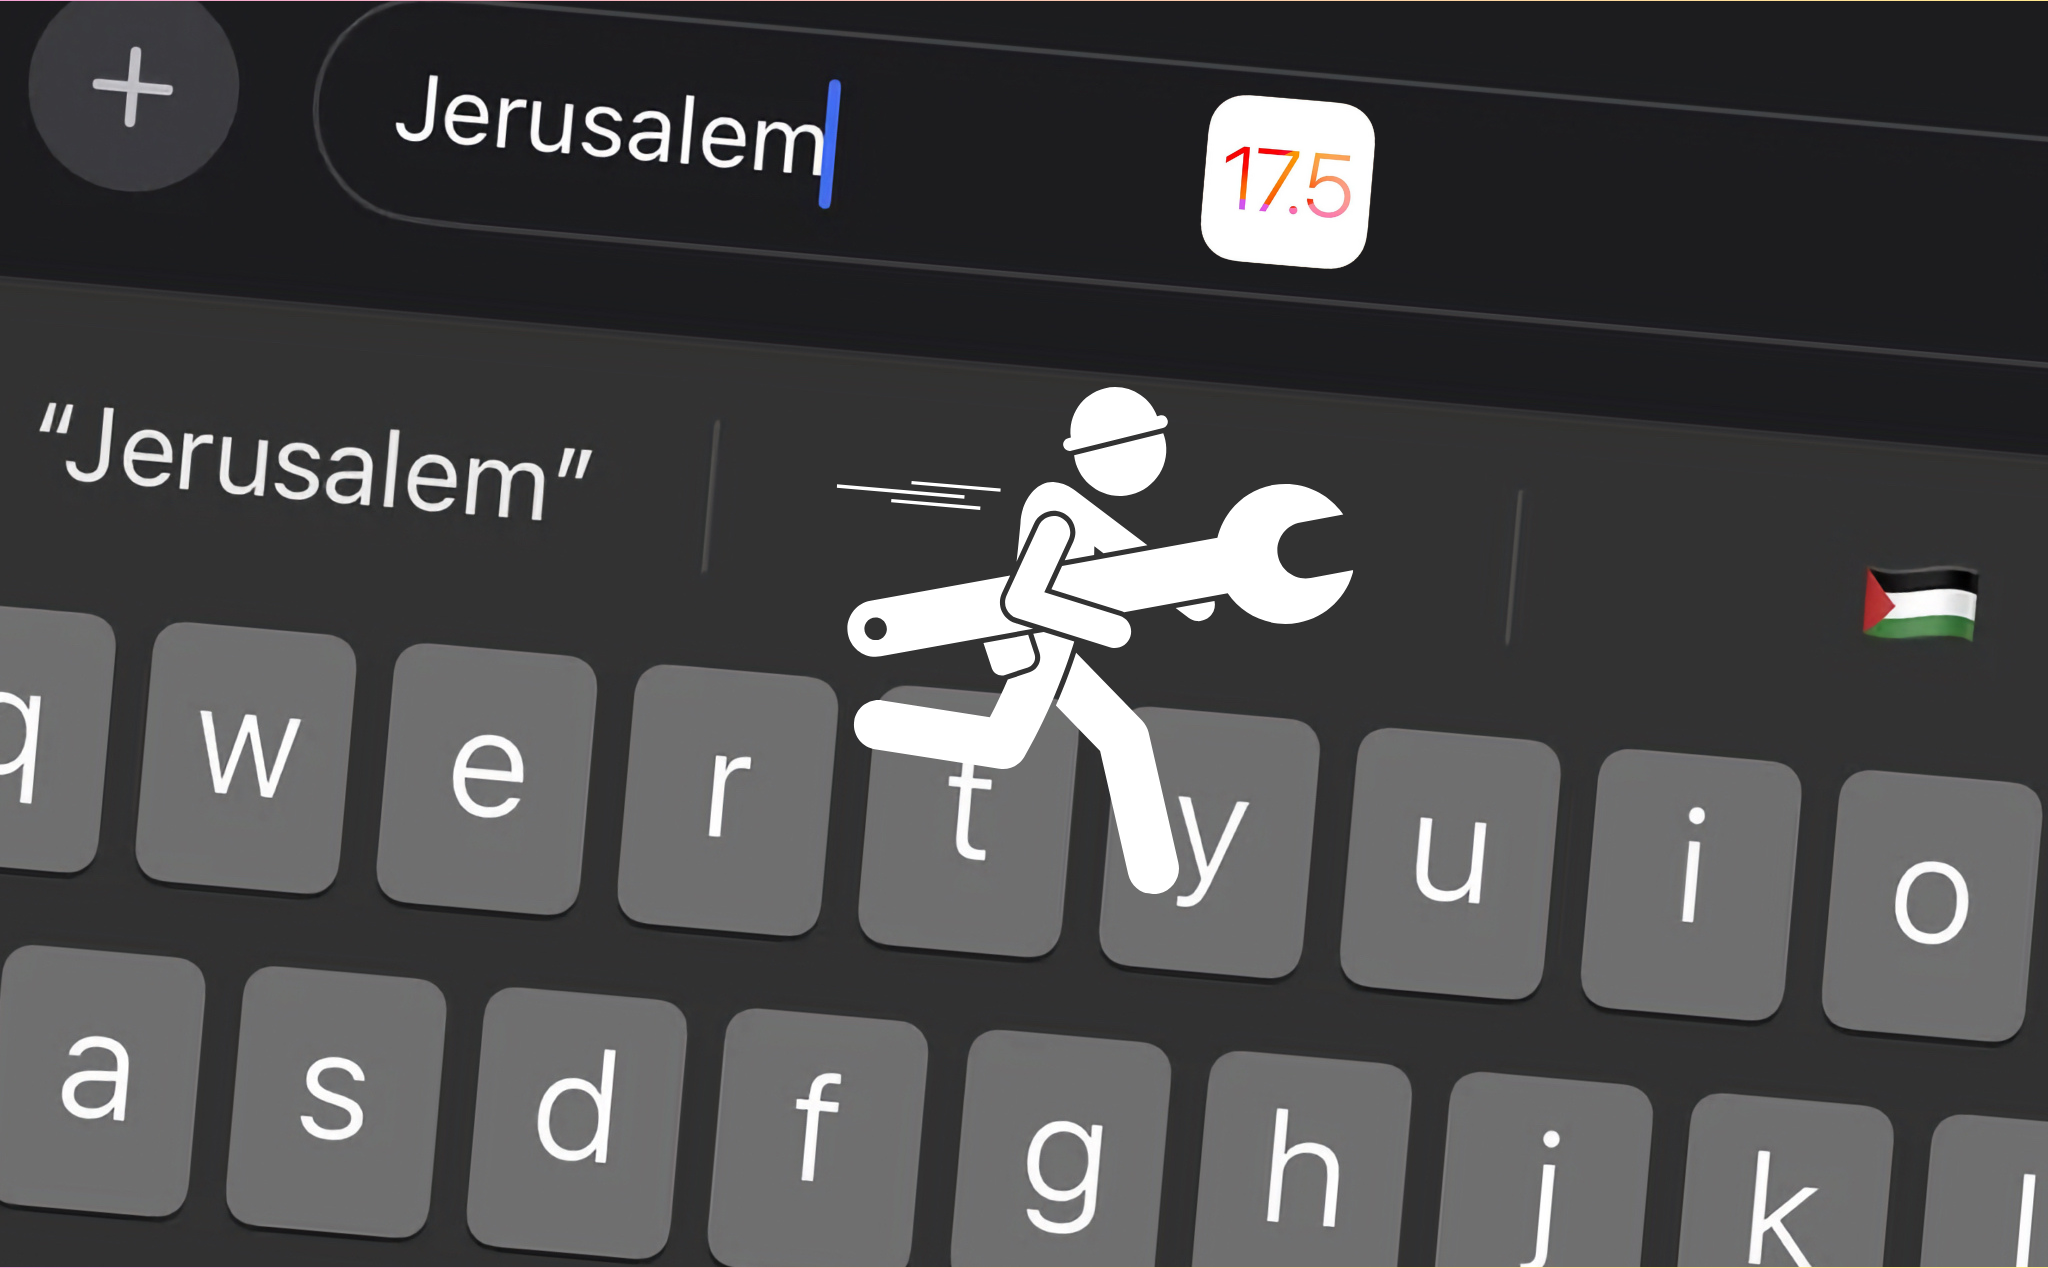 Apple phát hành iOS 17.5 dev beta 2, sửa lỗi hiển thị cờ Palestine khi người dùng nhập "Jerusalem"